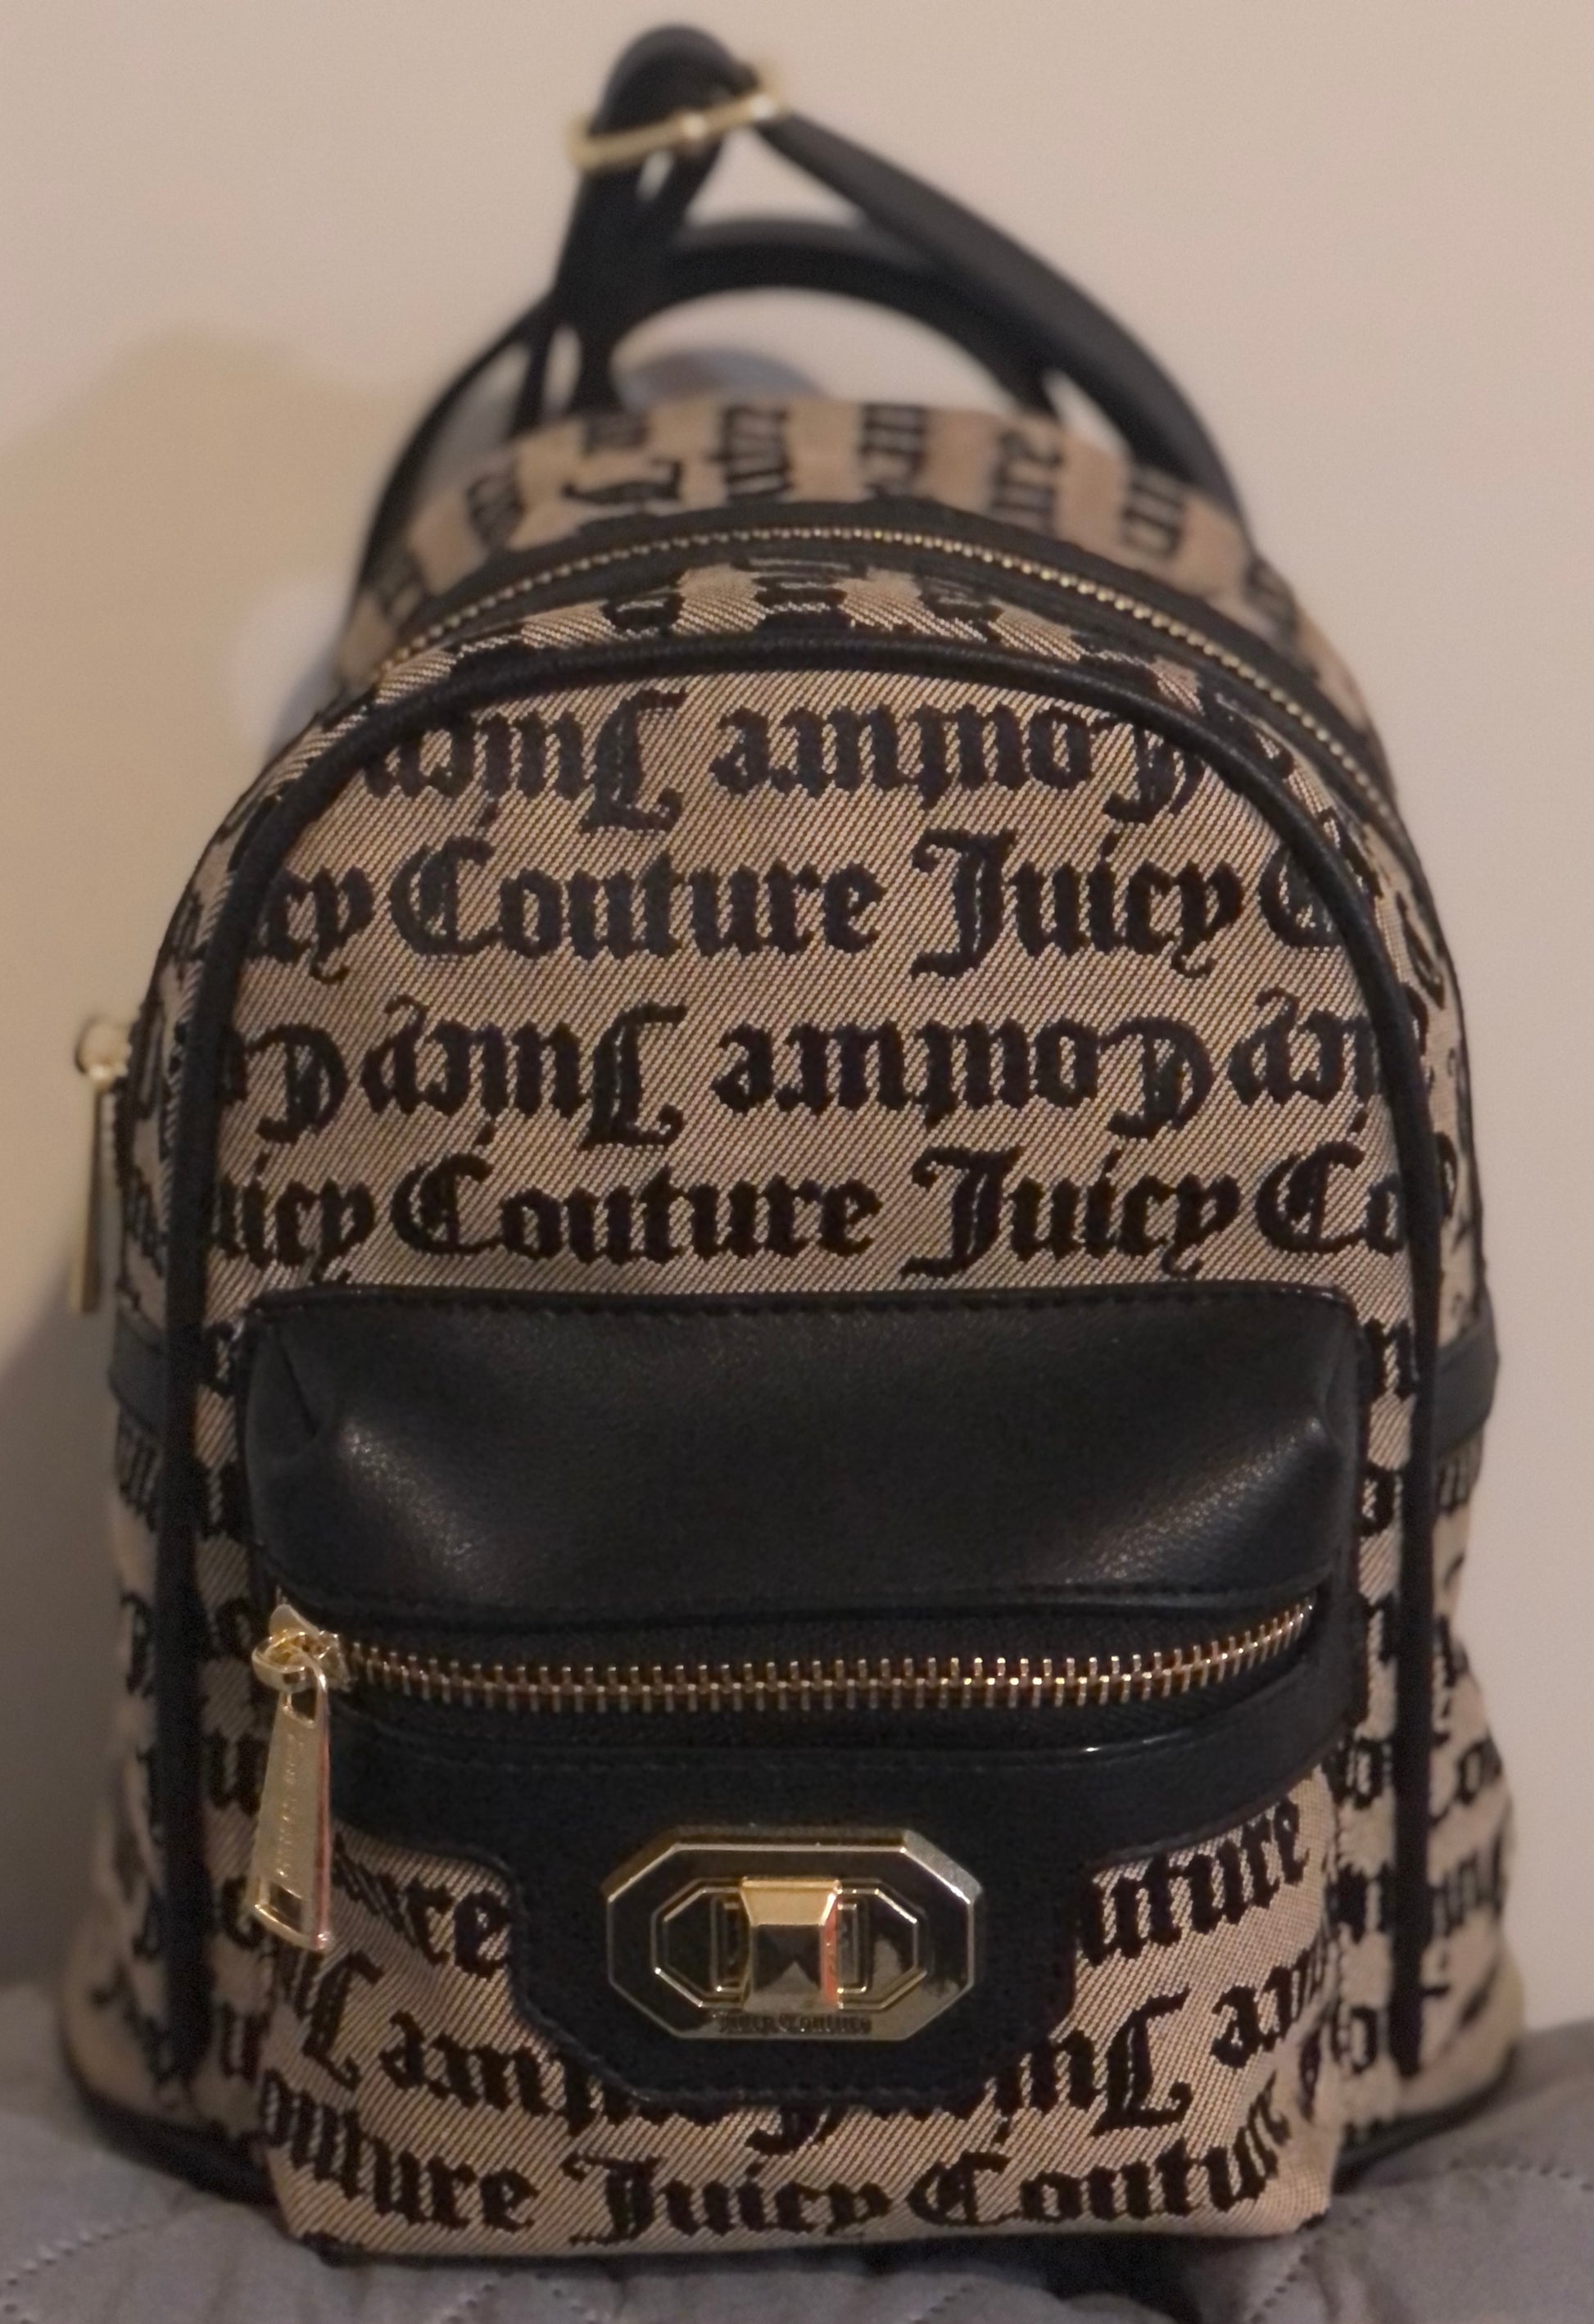 Juicy Couture Love Me Not Backpack – Queens Things Me 2 U